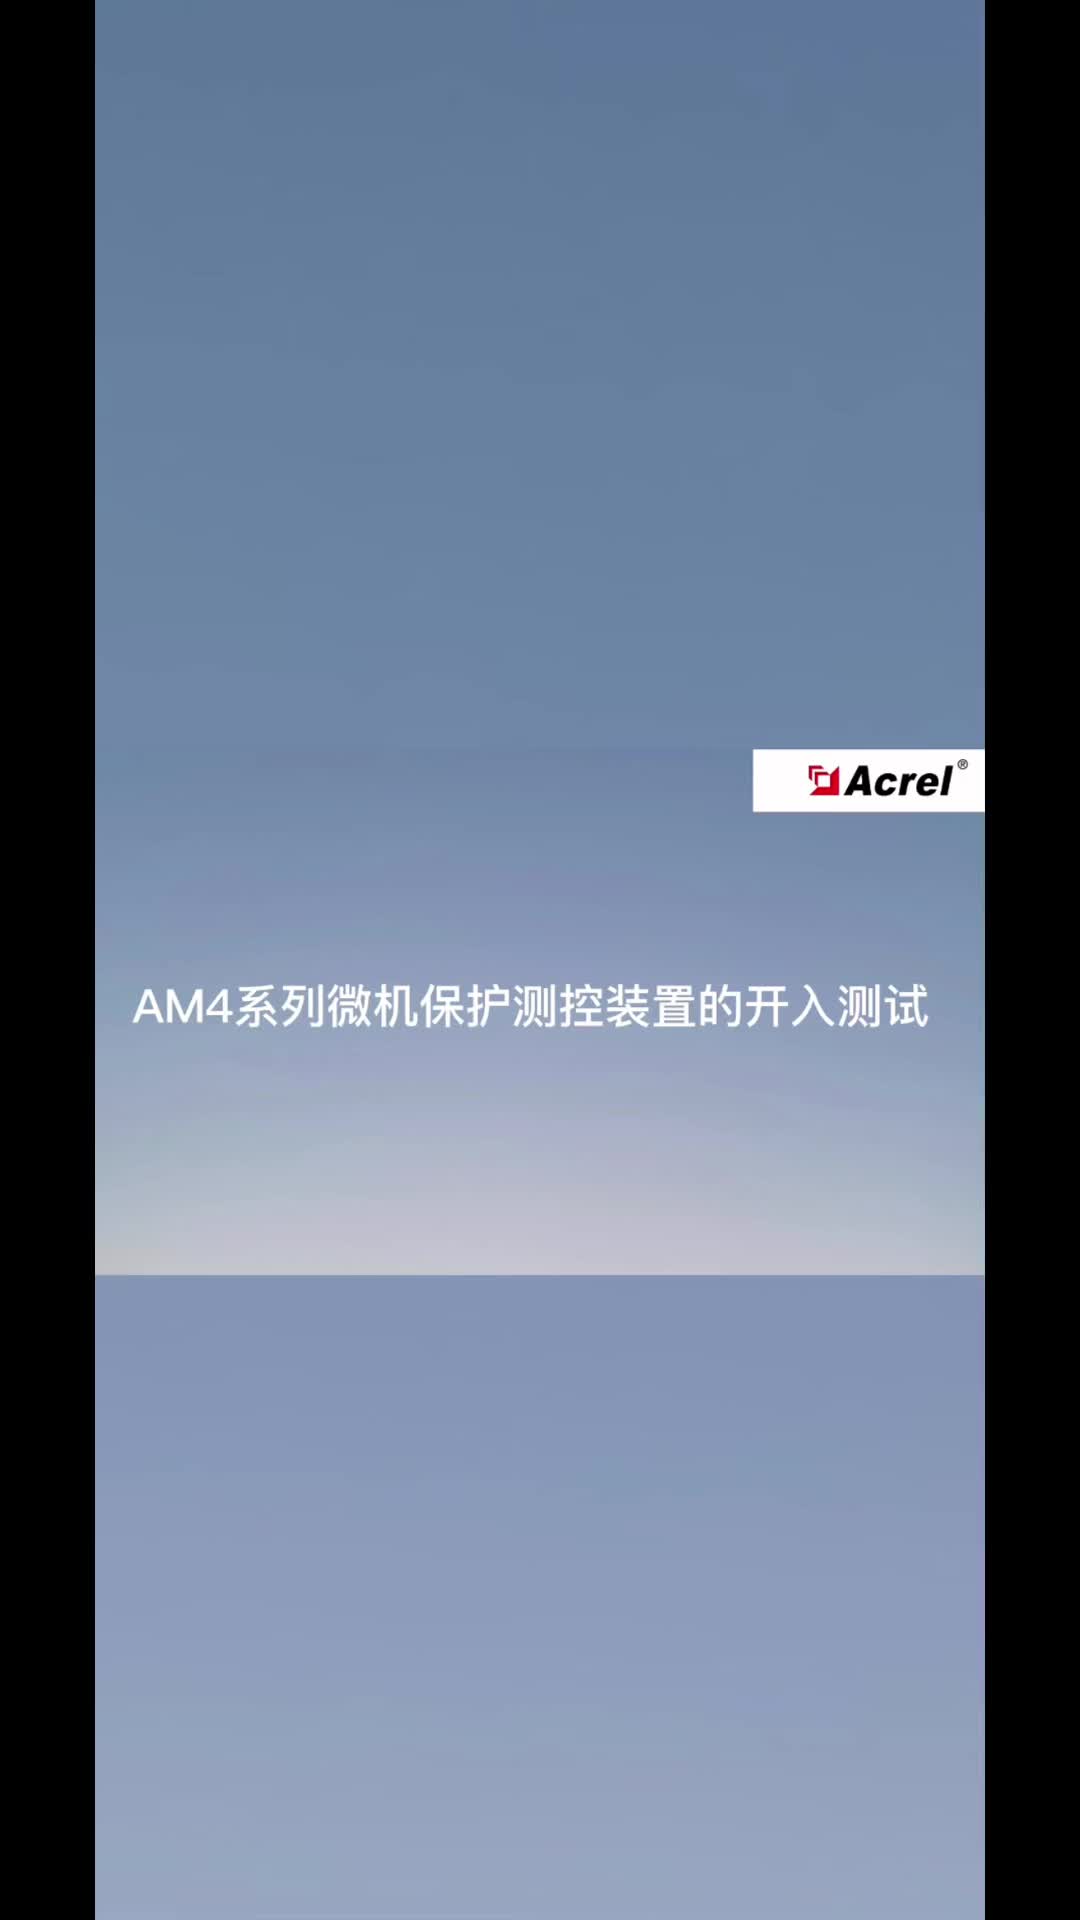 微机保护装置(AM4系列)的开入测试-安科瑞 蒋静